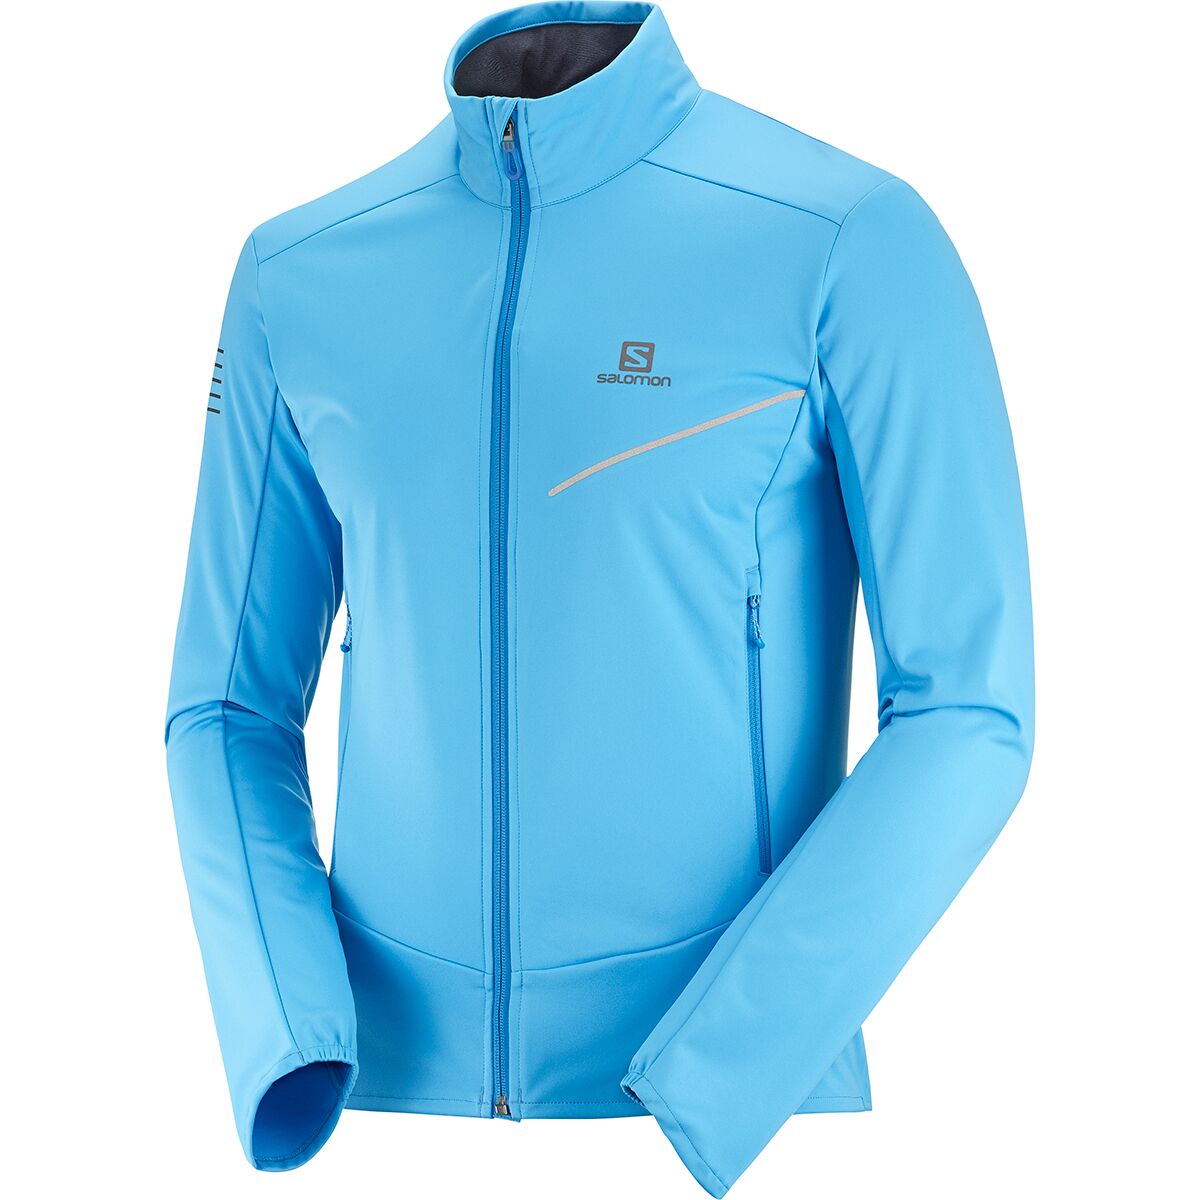 ik ga akkoord met Allergie Shetland Salomon RS Softshell Jacket - Men's - Clothing